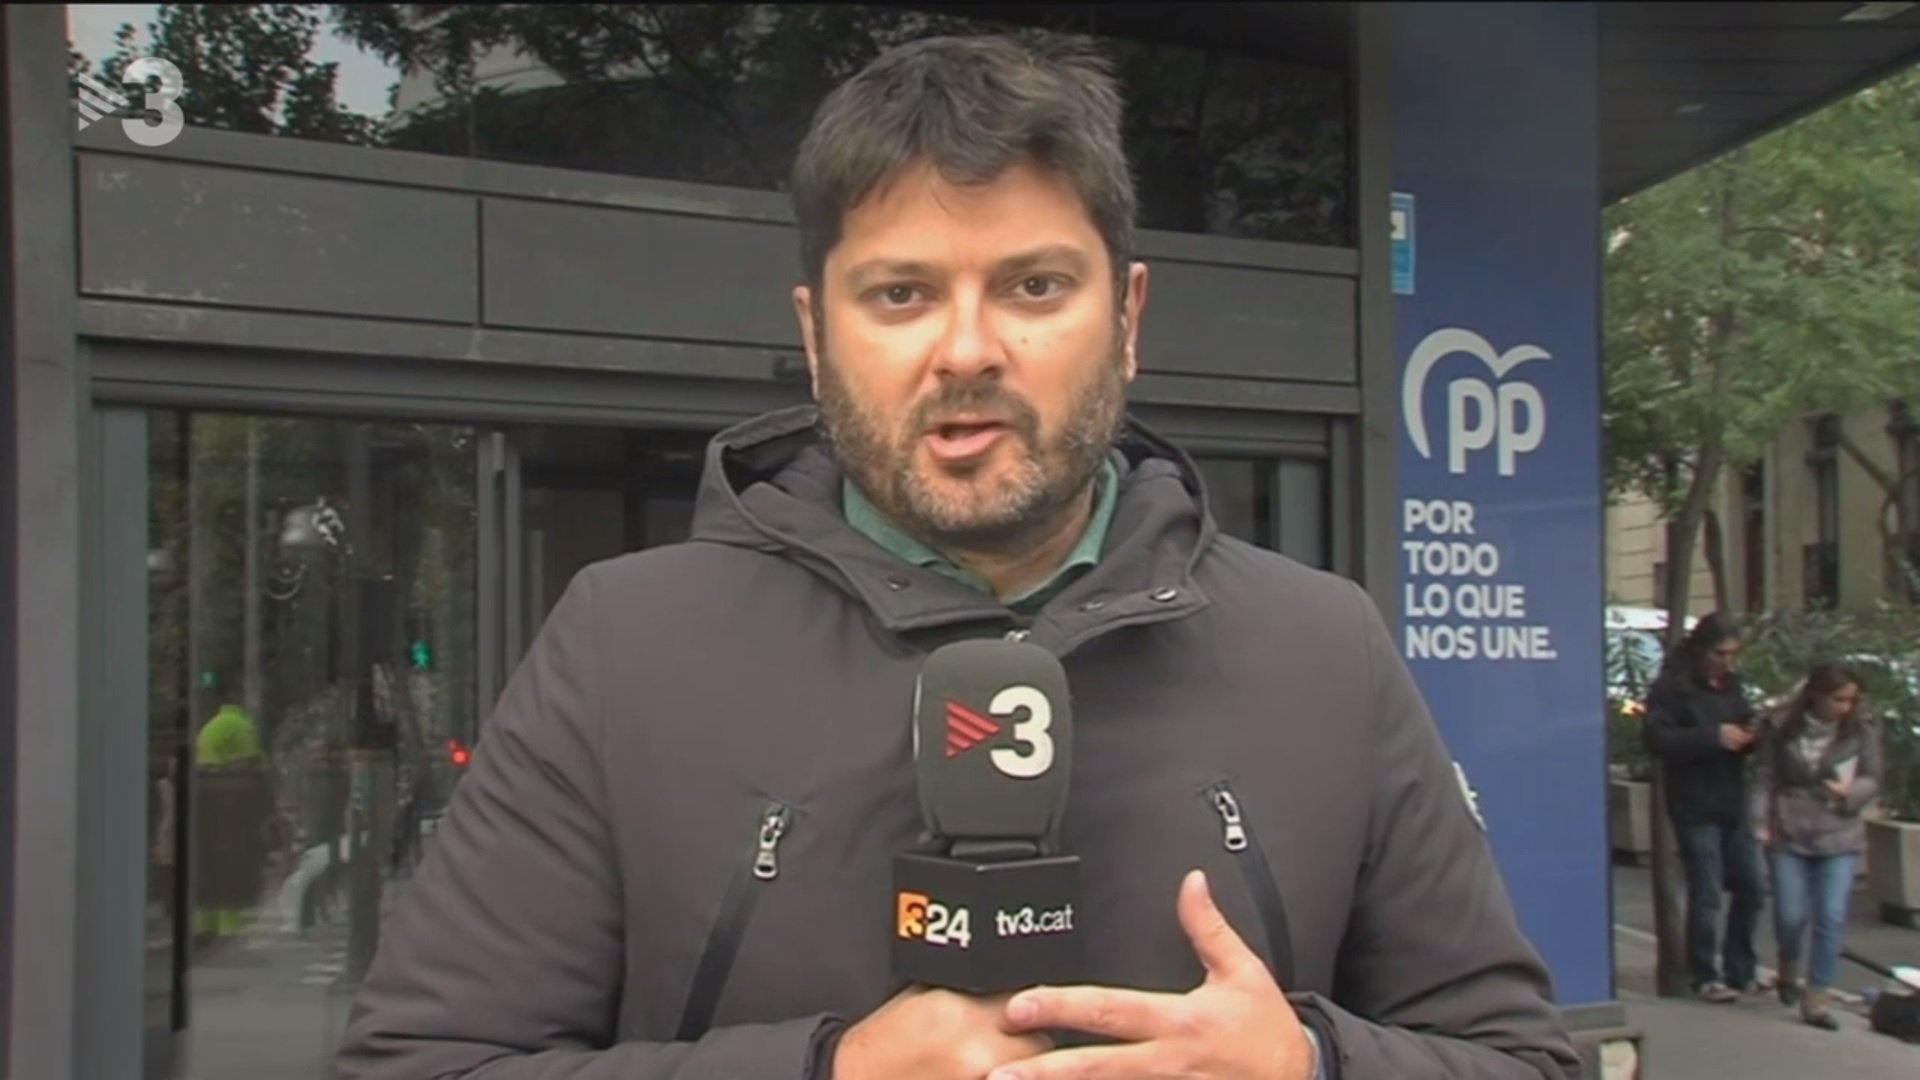 Un catalanófobo increpa a un periodista de TV3 en Madrid y reacciona: “Es un mierdas”